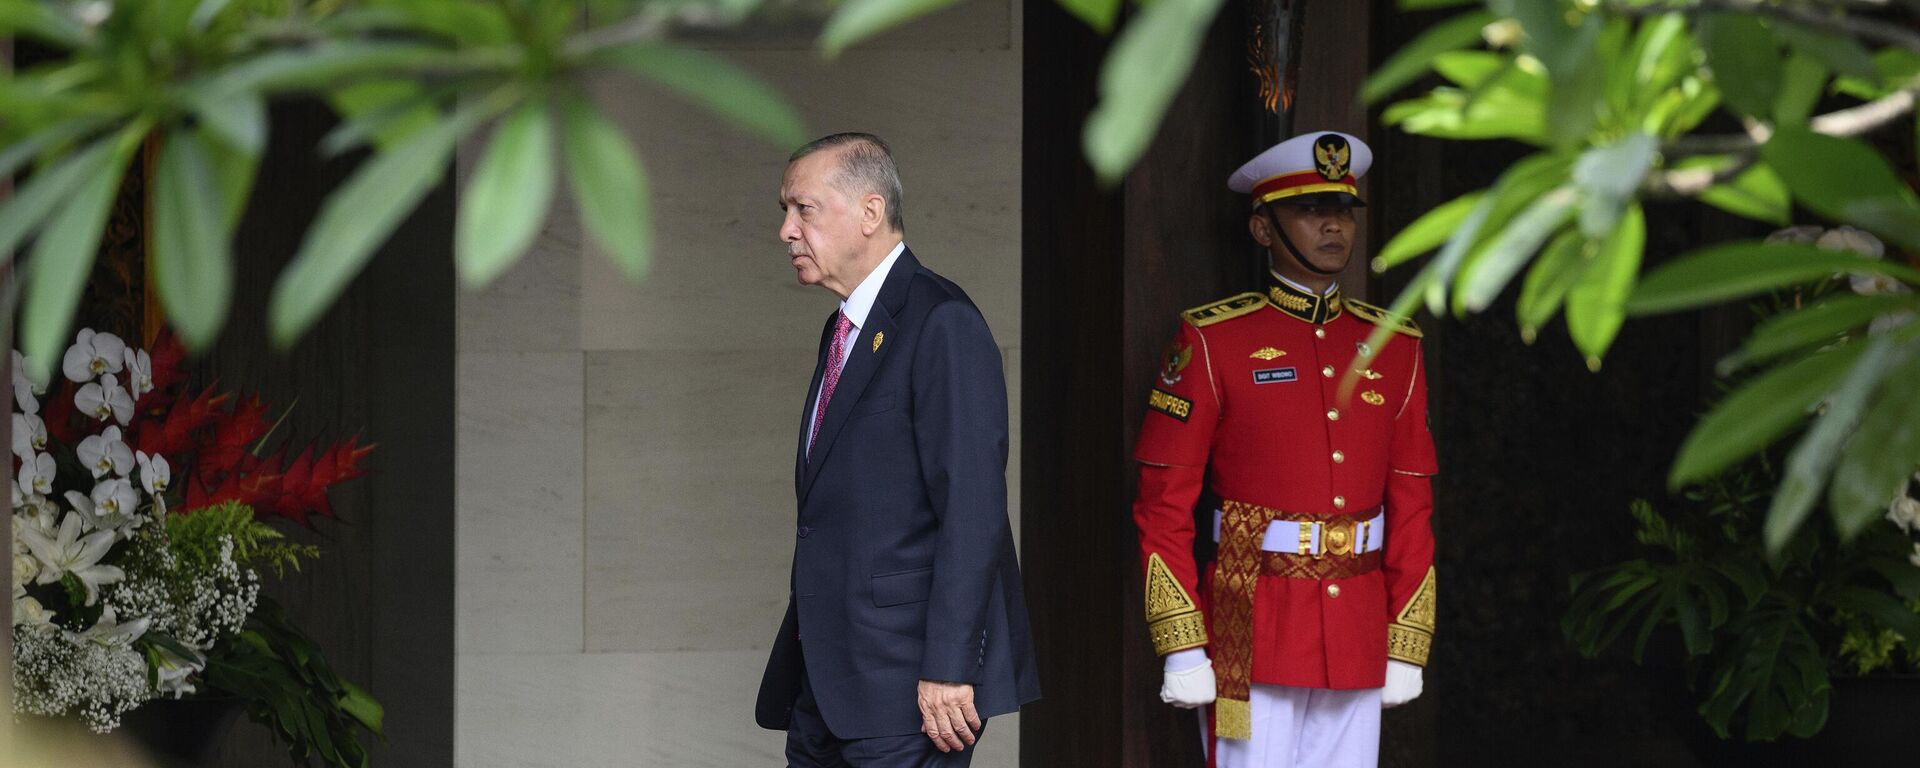 Президент Турции Реджеп Тайип Эрдоган прибывает к началу саммита G20 в Бали, Индонезия - Sputnik Латвия, 1920, 16.11.2022